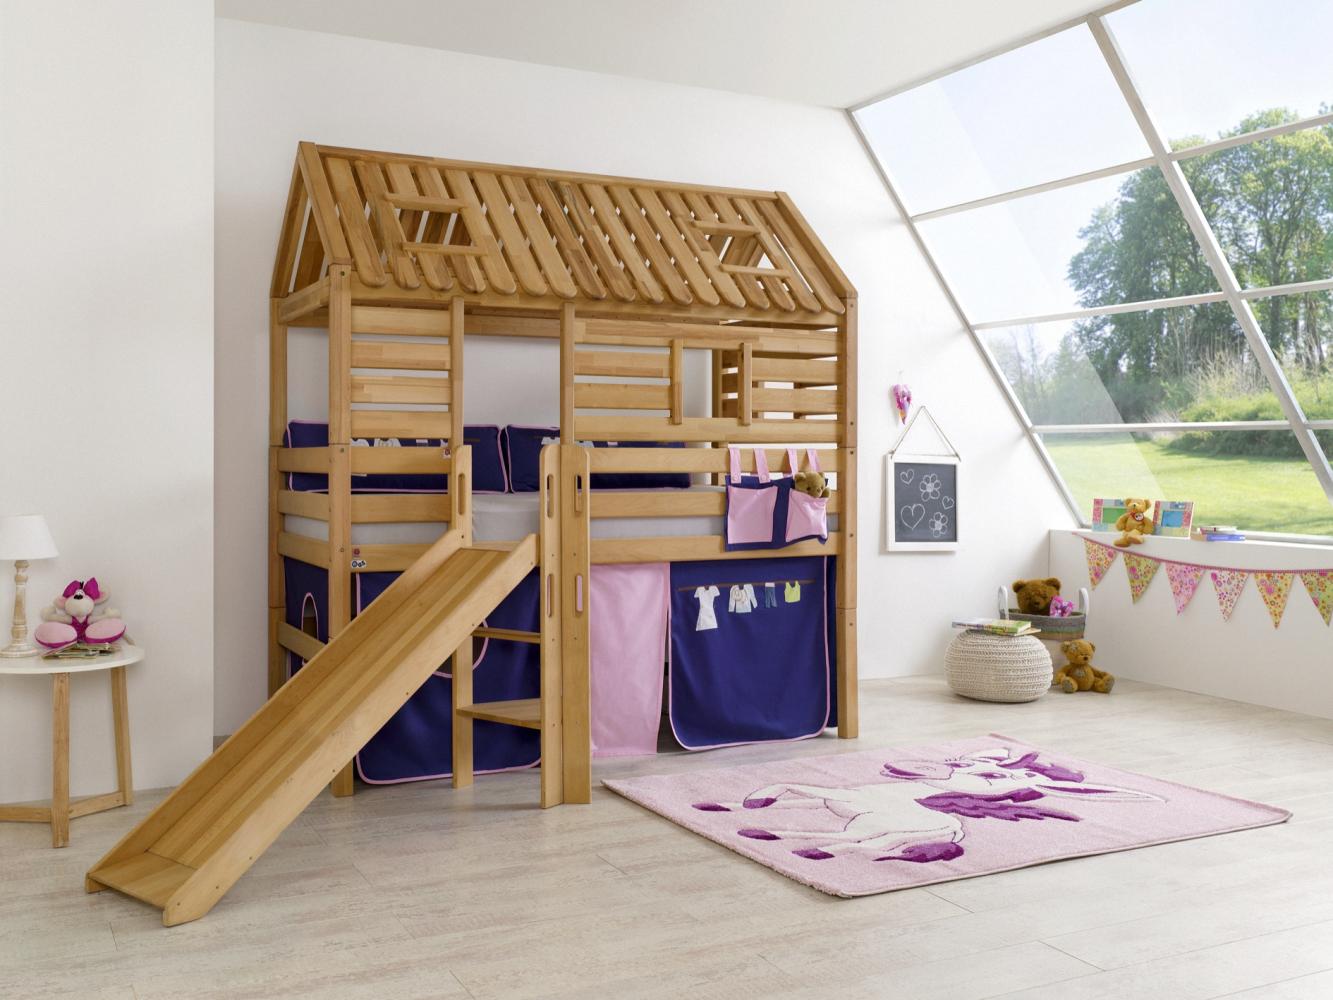 Relita Tom´s Hütte Spielbett mit Rutsche Buche massiv geölt, inkl. Textilset rosa-violett Bild 1